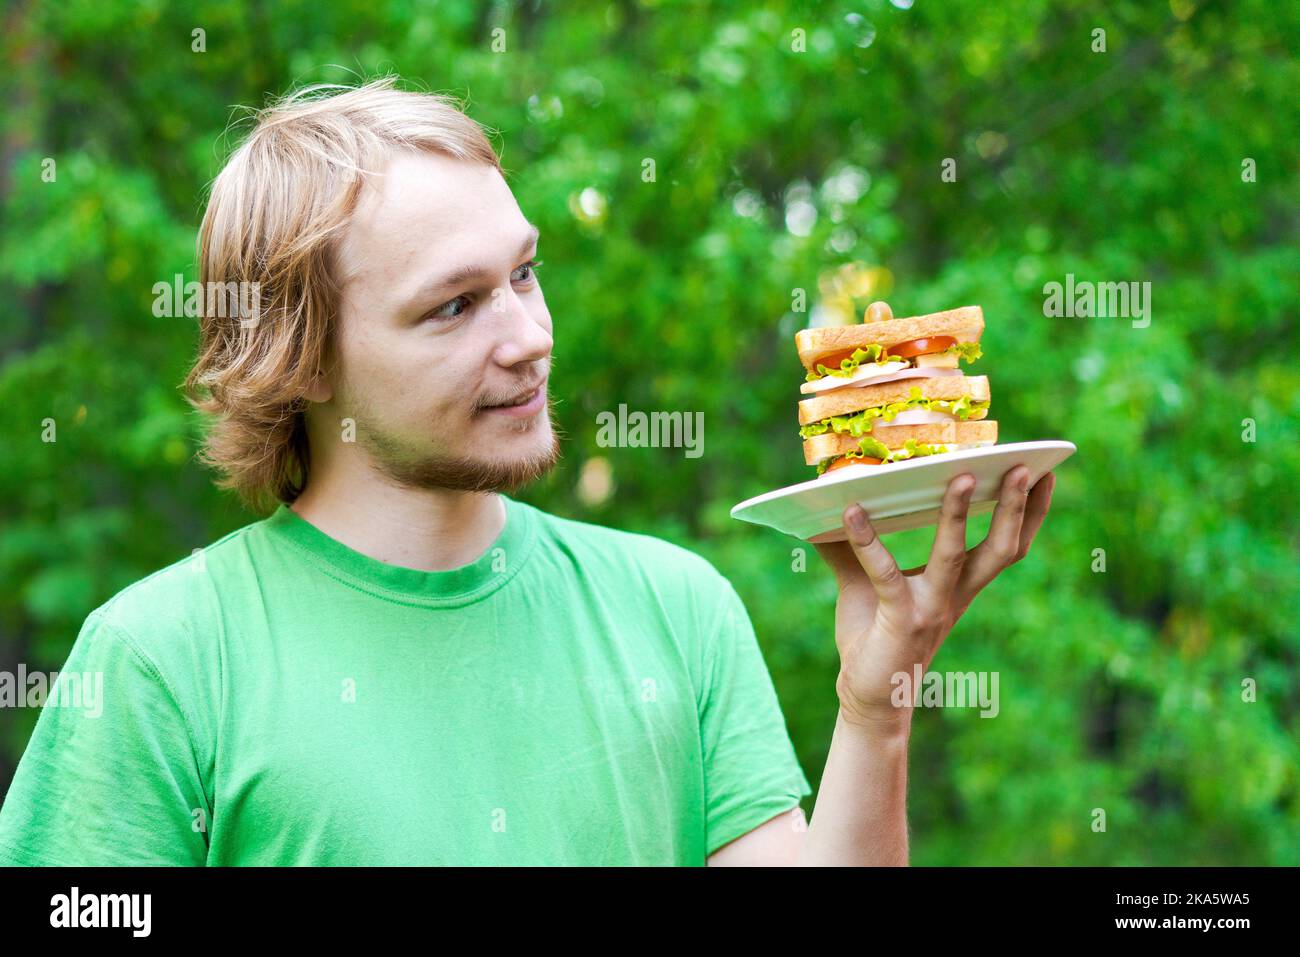 Jeune homme tenant un gros sandwich à la saucisse sur l'assiette. L'étudiant mange de la nourriture rapide dans un paquet sur fond de feuillage vert. Aliments indésirables rapides. Un homme très affamé. Concept de régime. Banque D'Images